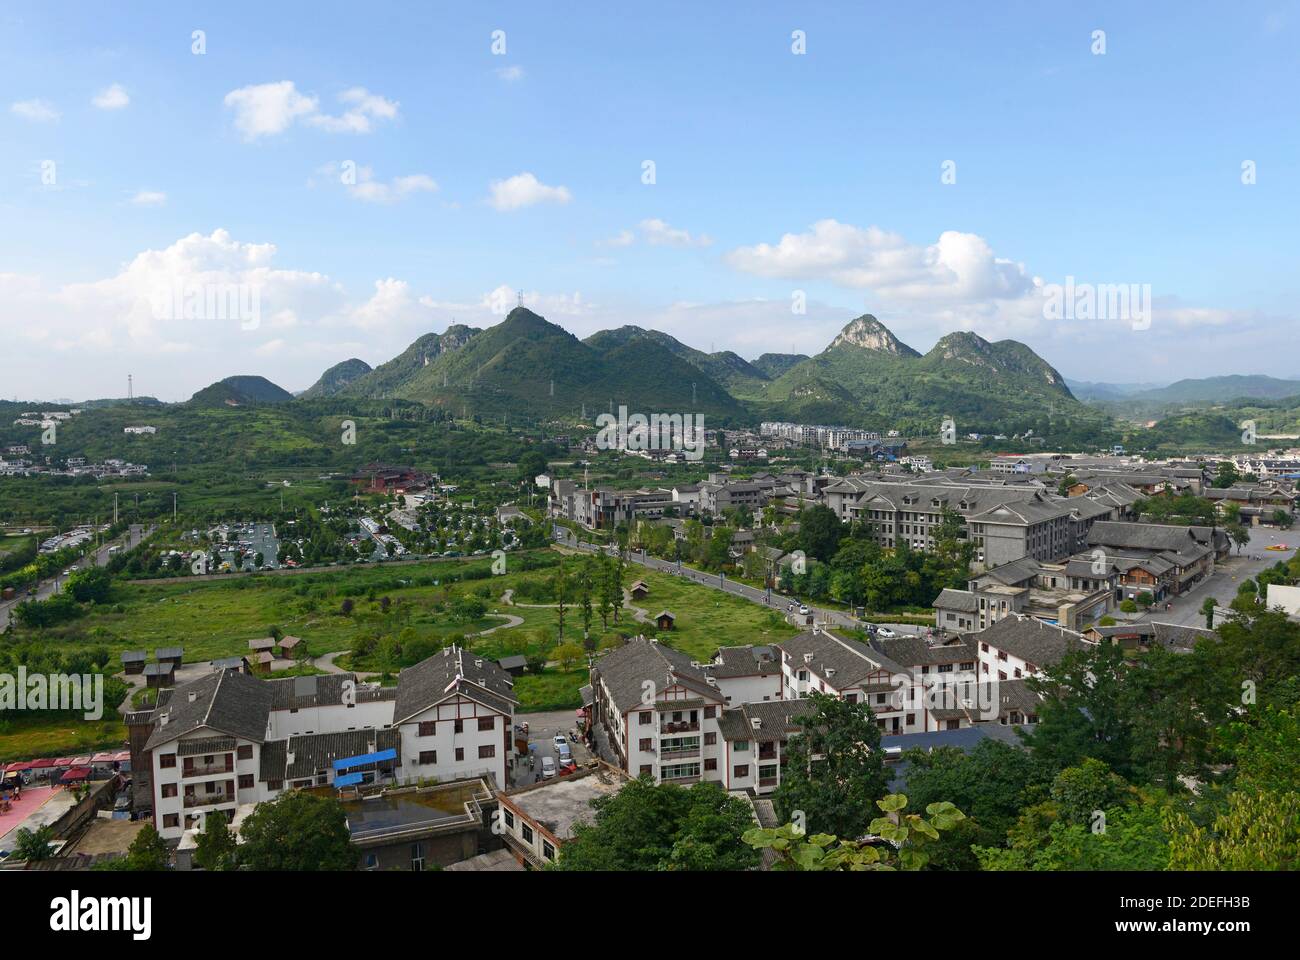 Blick über den Stadtrand der alten Stadt Qingyan, einer lokalen Touristenattraktion mit erhaltenen Stadtmauern, in der Nähe von Guiyang, China Stockfoto